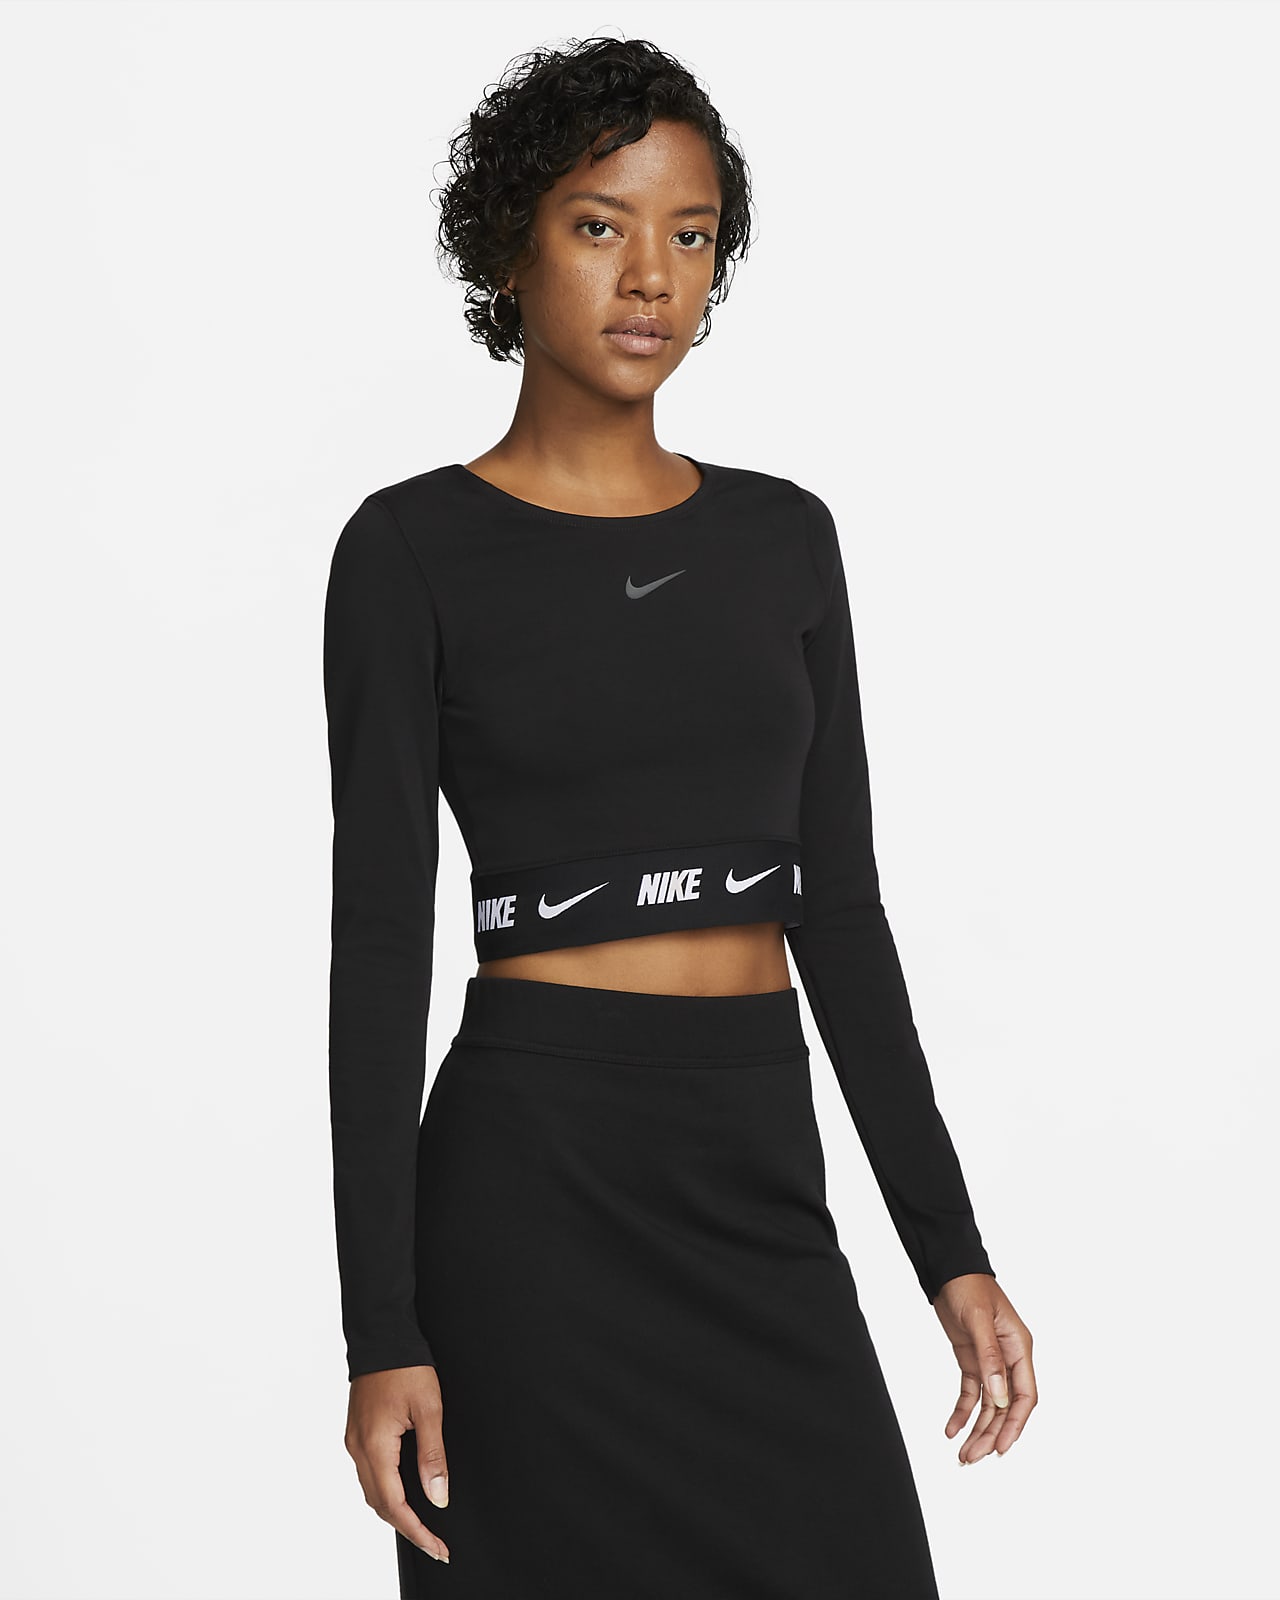 Crop top à manches longues Nike Sportswear pour Femme